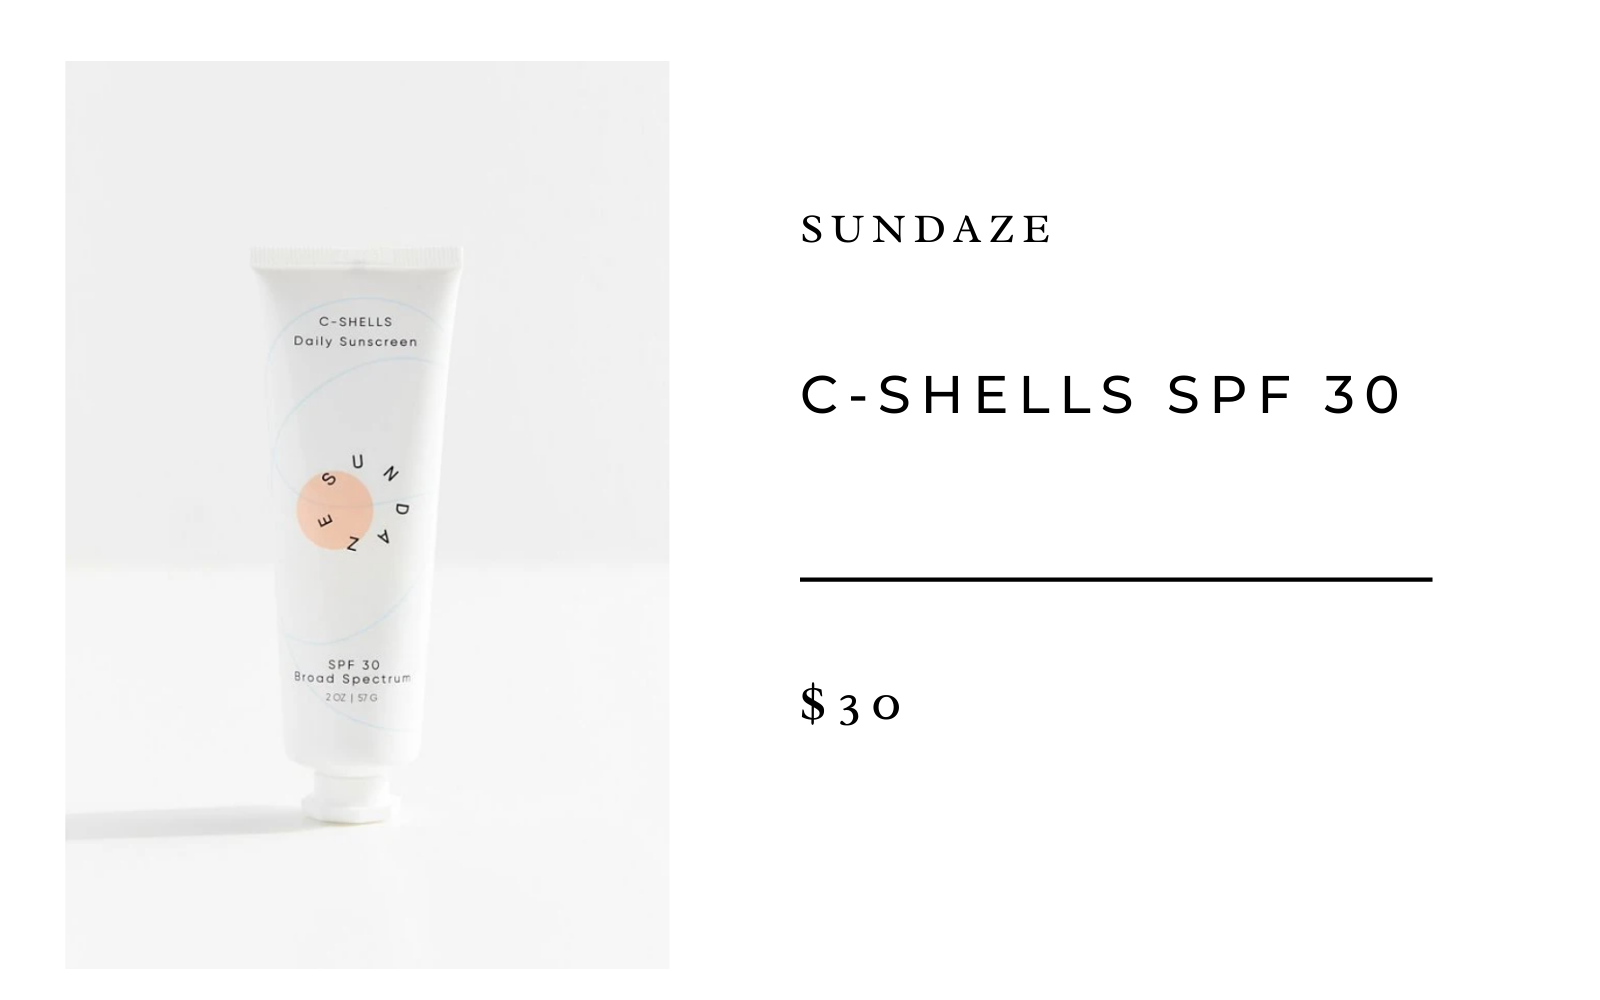 Sundaze C-Shells SPF 30 